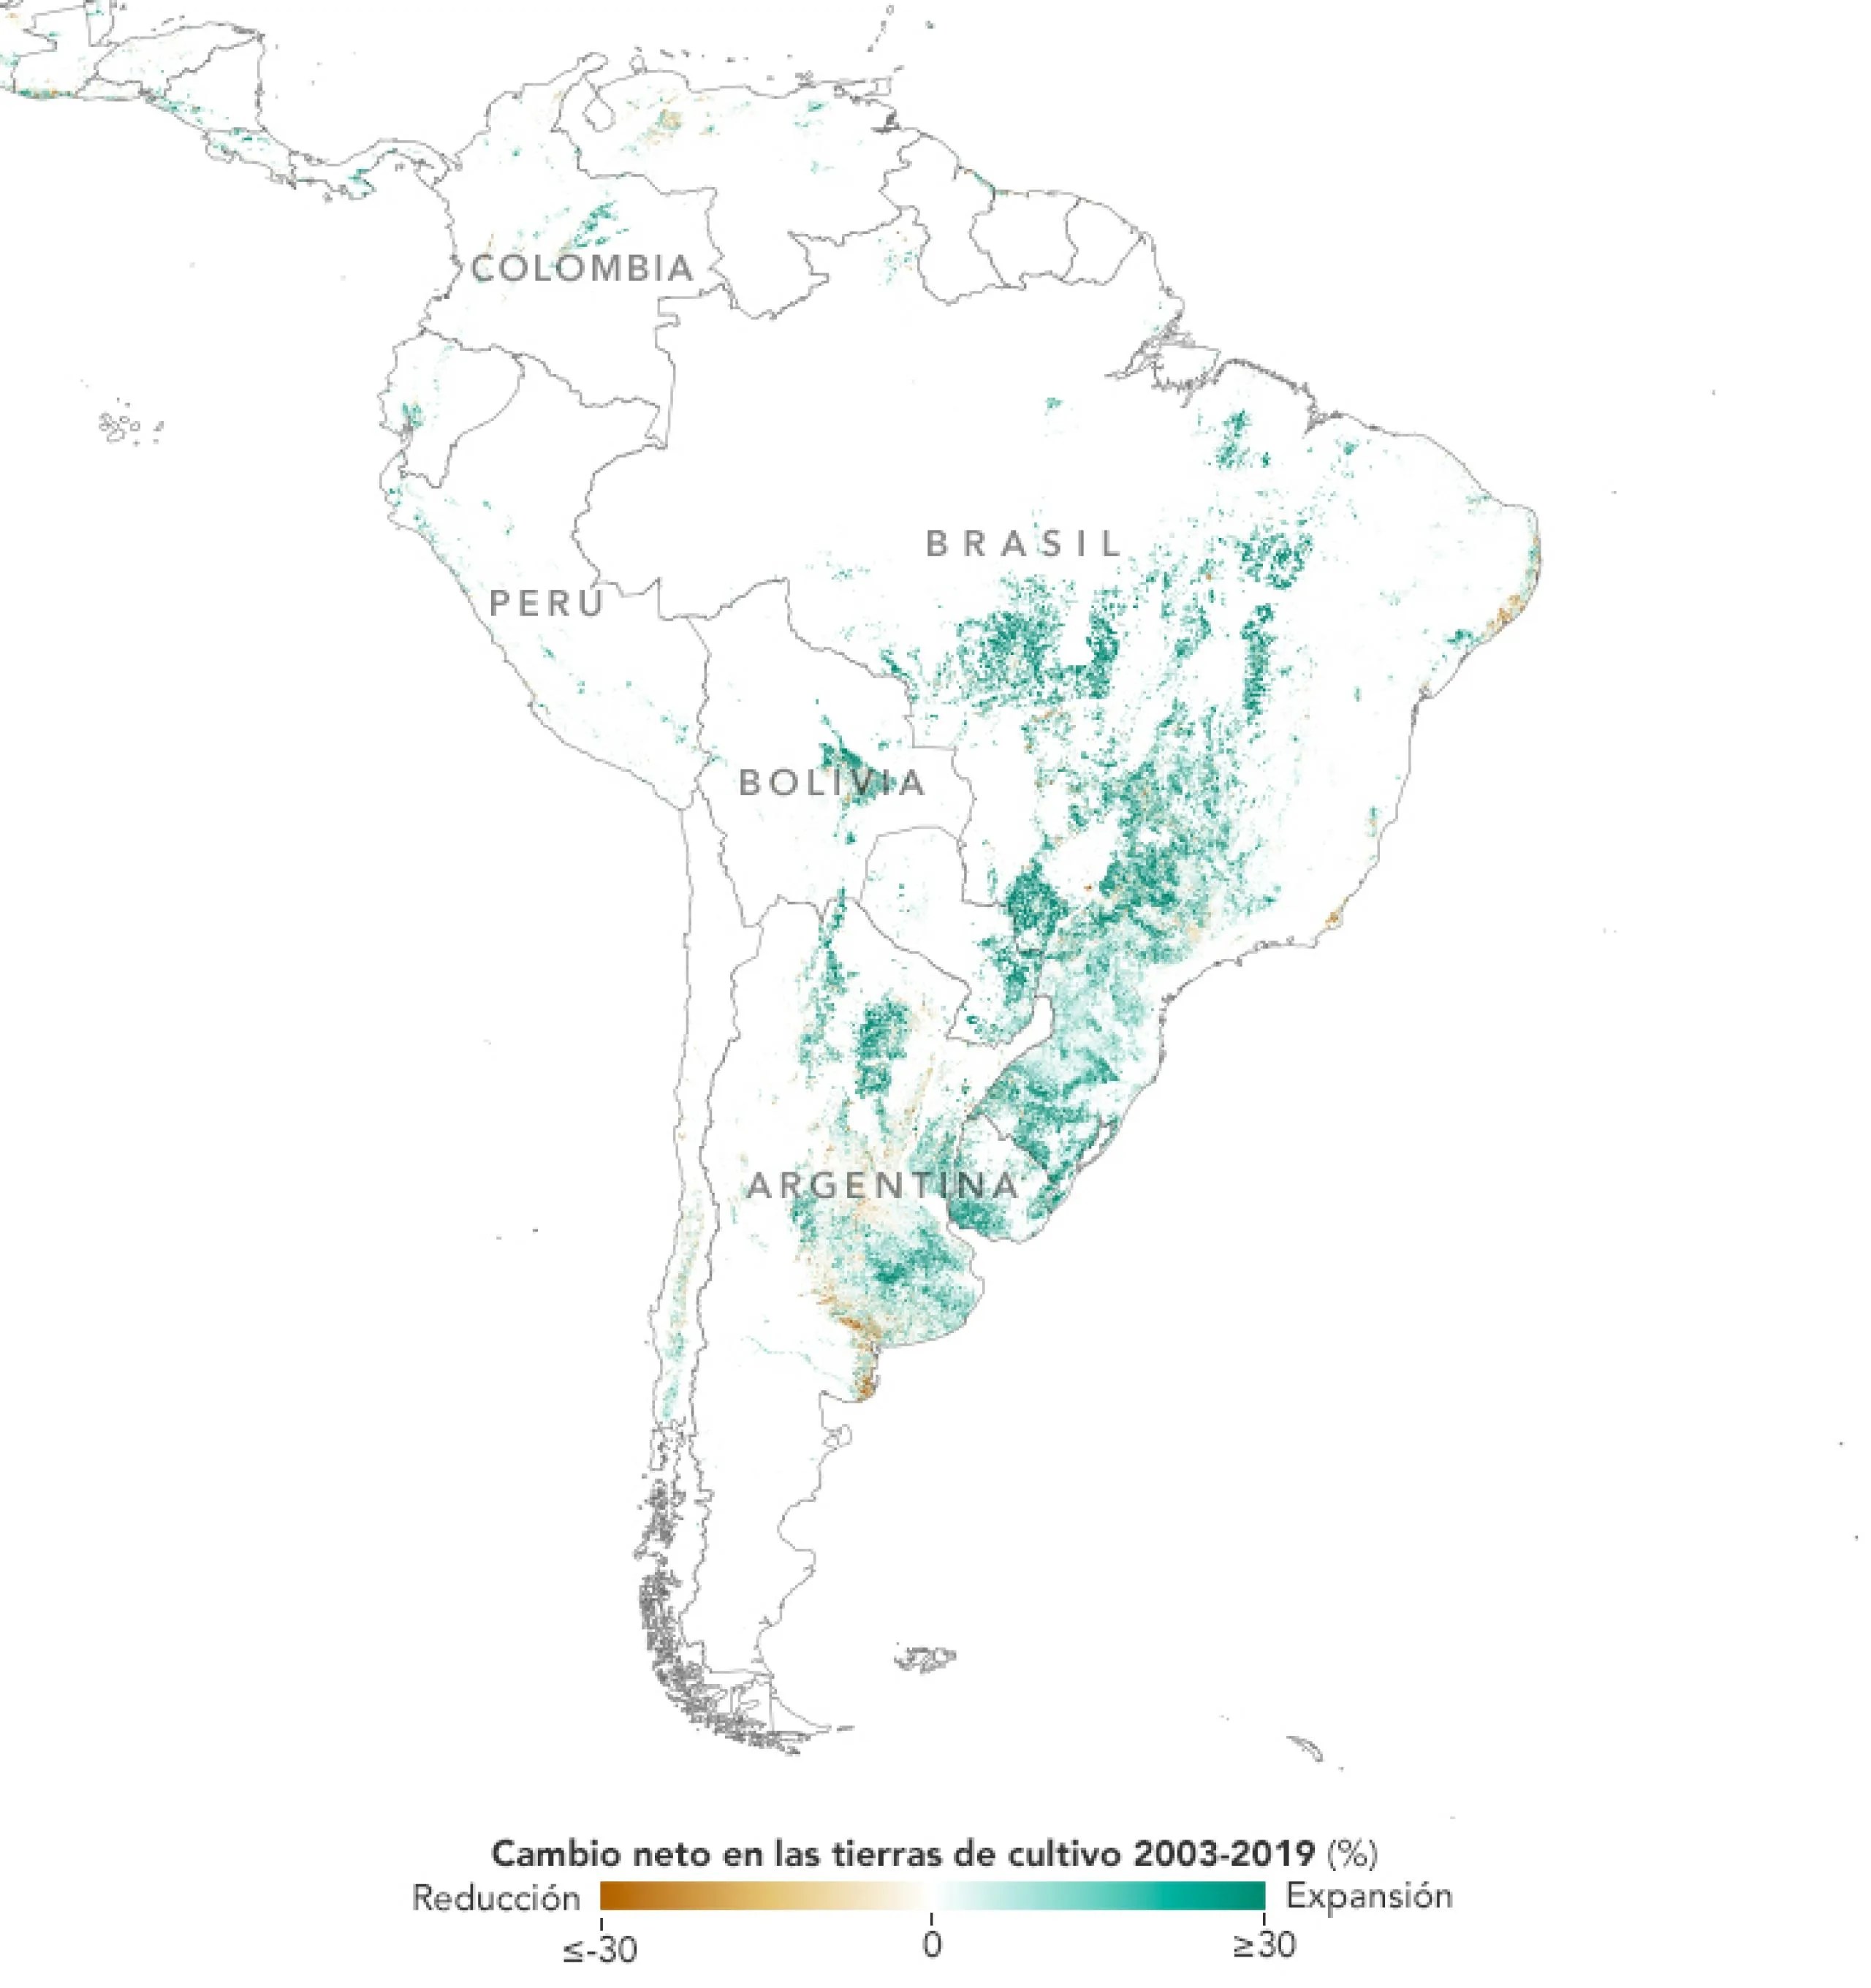 Esta imagen de América del Sur muestra el cambio neto en las tierras de cultivo entre 2003 y 2019.